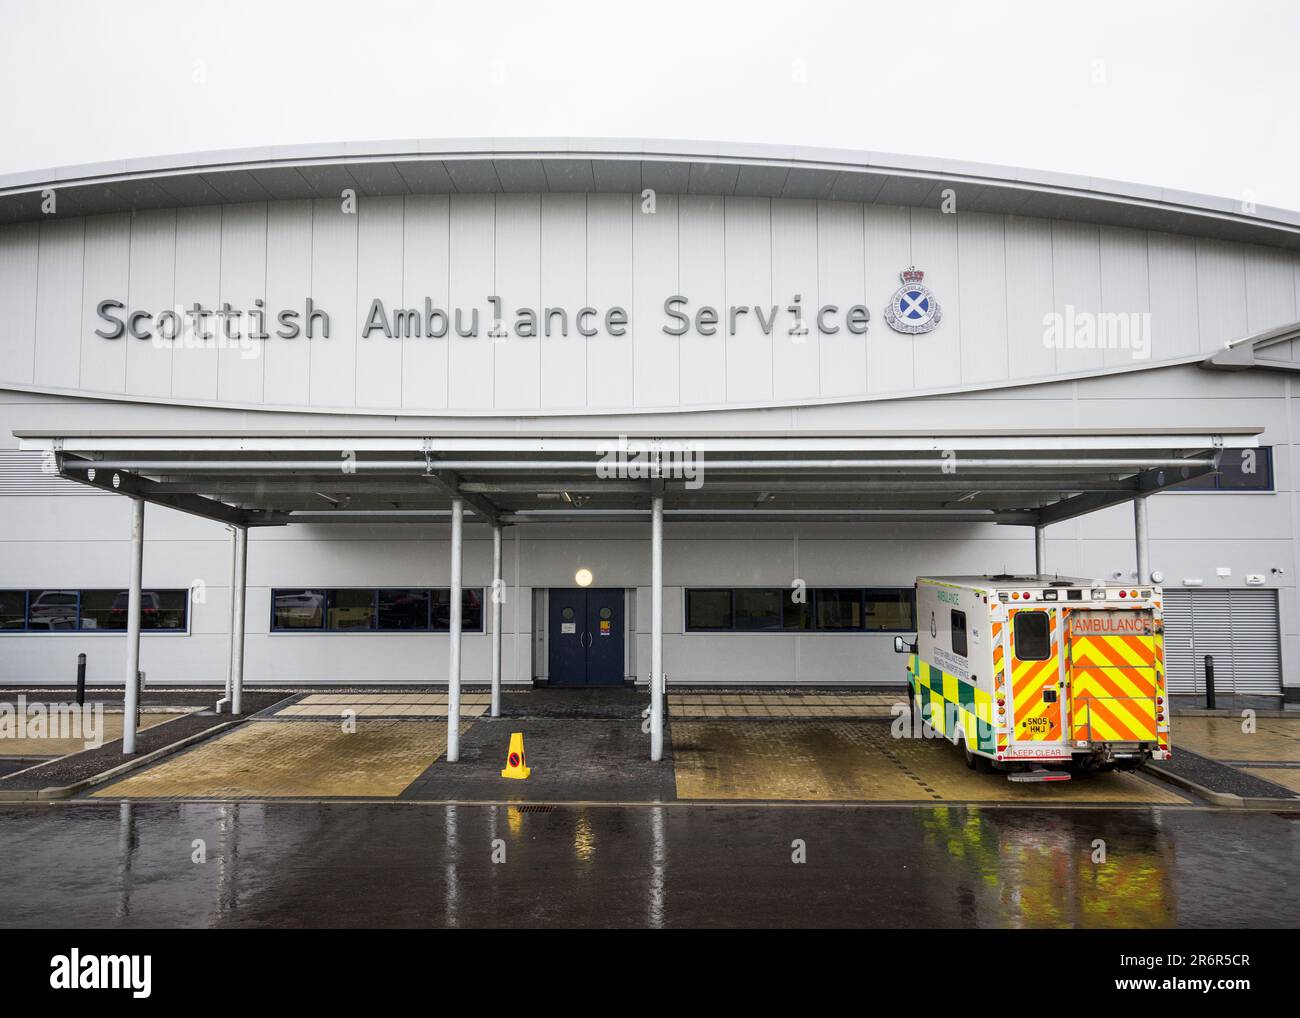 Foto del file datata 11/03/16 di una base di servizi di ambulanza scozzesi, come il lavoro scozzese ha detto che una 'crisi' nel servizio sanitario sta mettendo in pericolo vite umane. Foto Stock